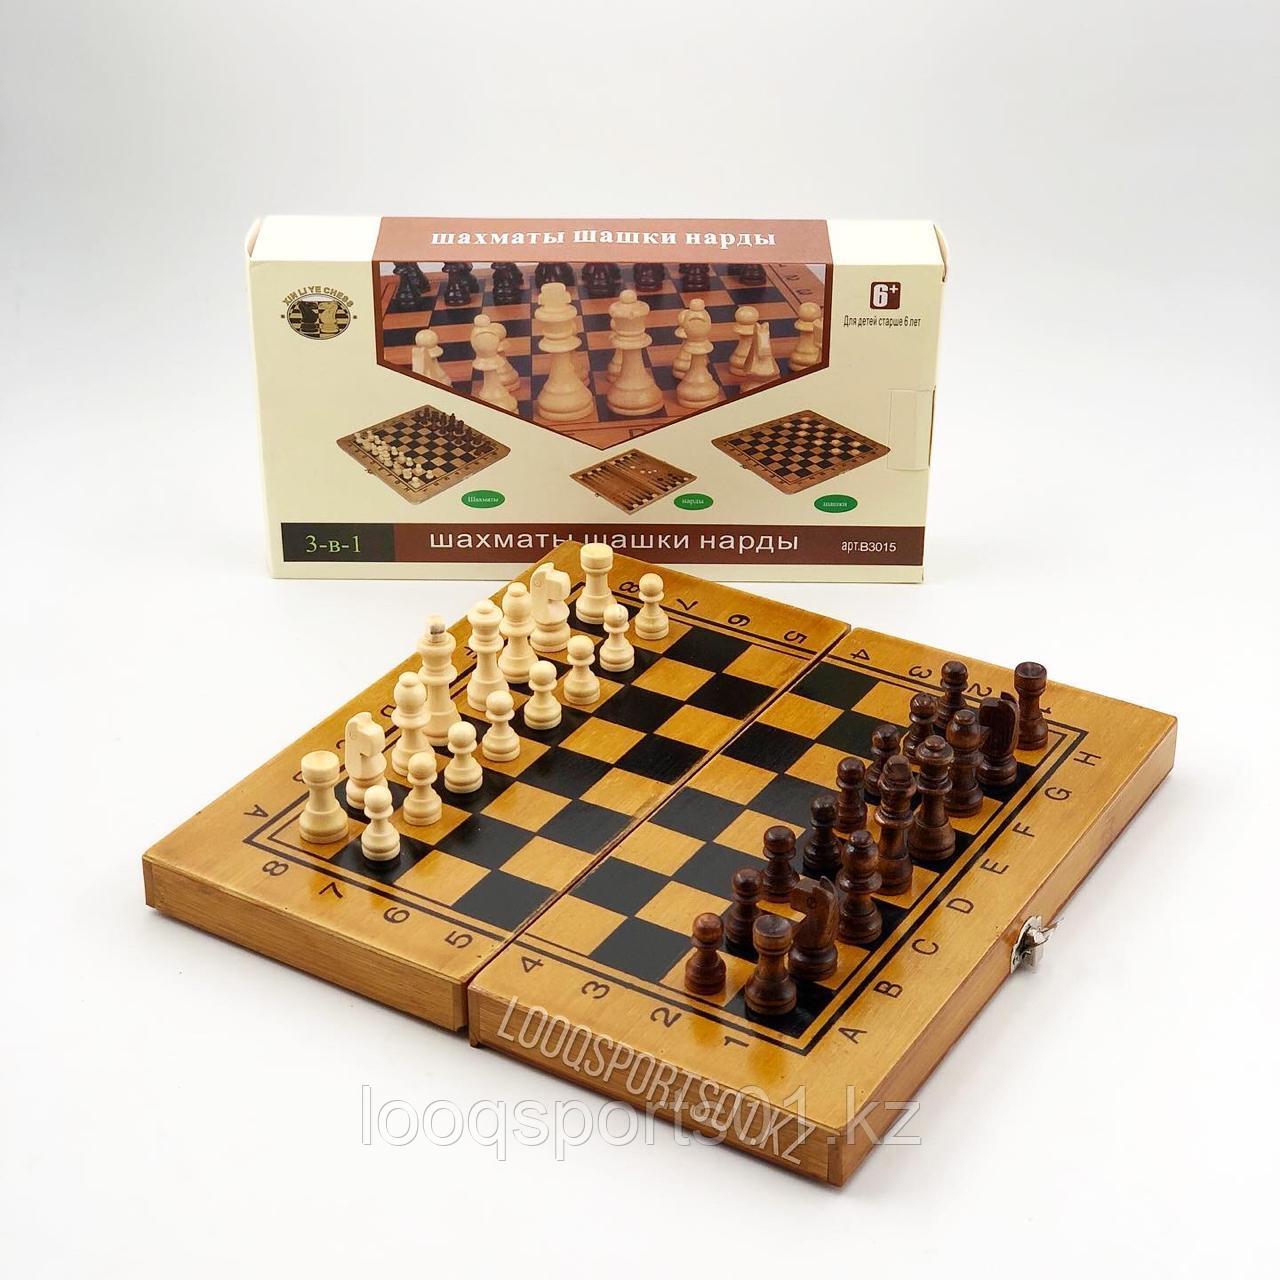 Шахматы, шашки, нарды деревянные 3в1 (48х48см)